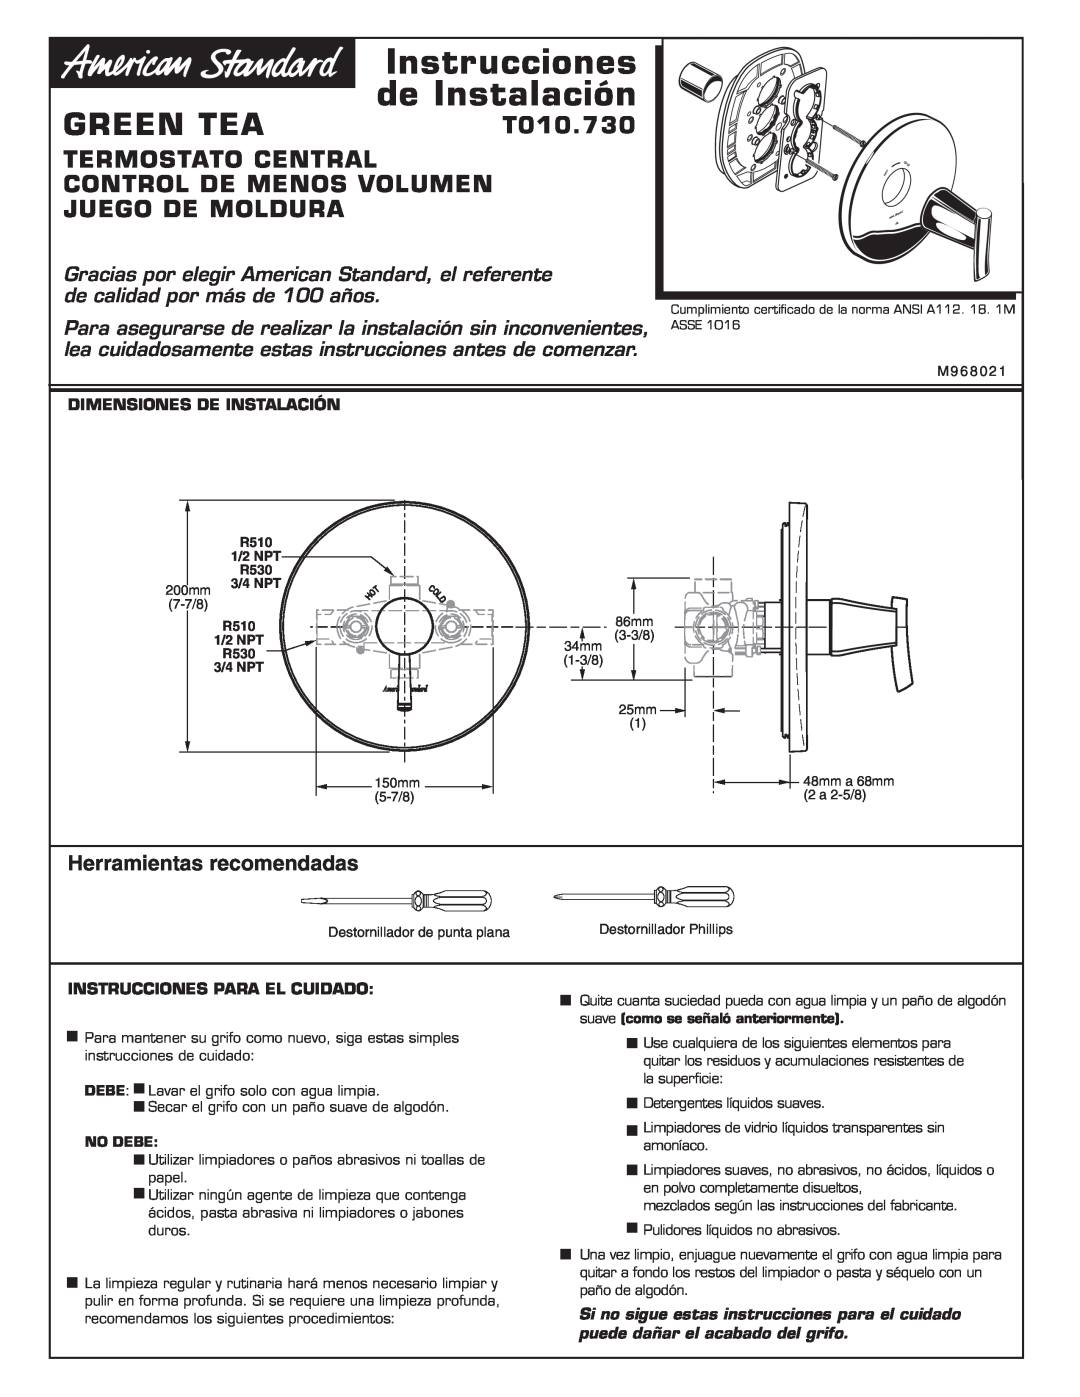 American Standard T010.730 Termostato Central Control De Menos Volumen Juego De Moldura, Herramientas recomendadas 